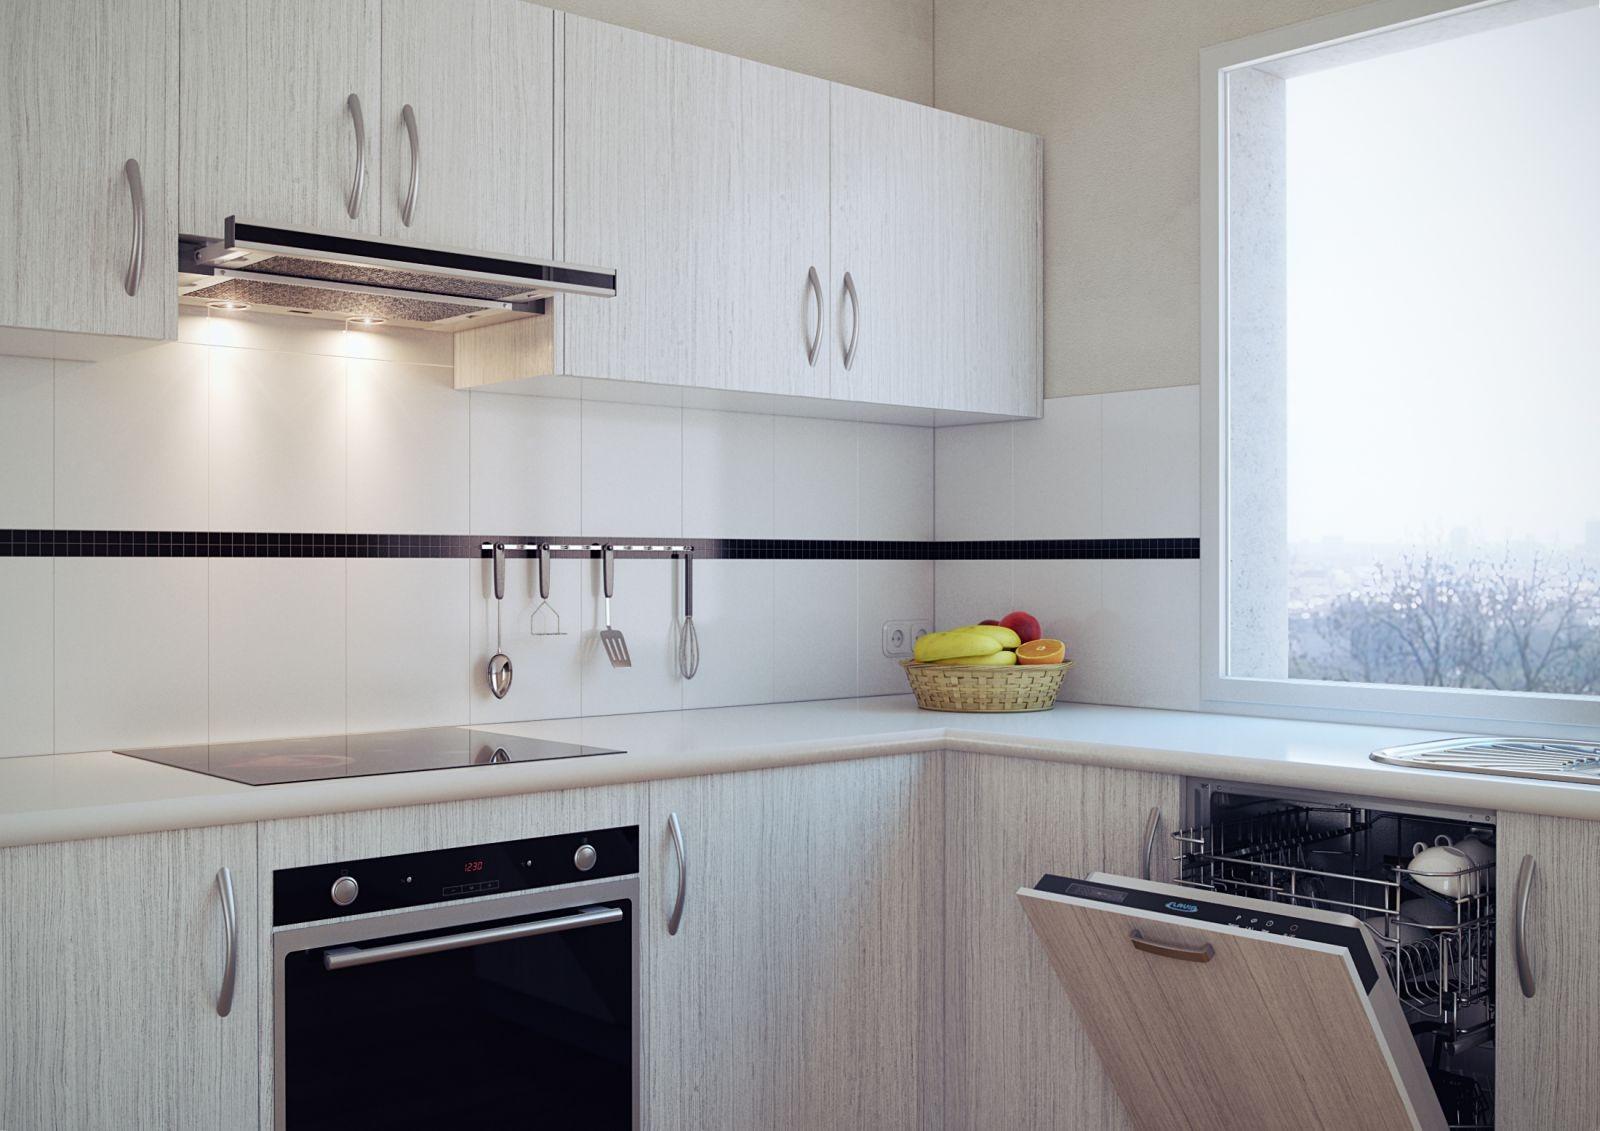 Кухня без вытяжки над плитой фото дизайн: нужна ли вытяжка над электроплитой или без нее можно обойтись